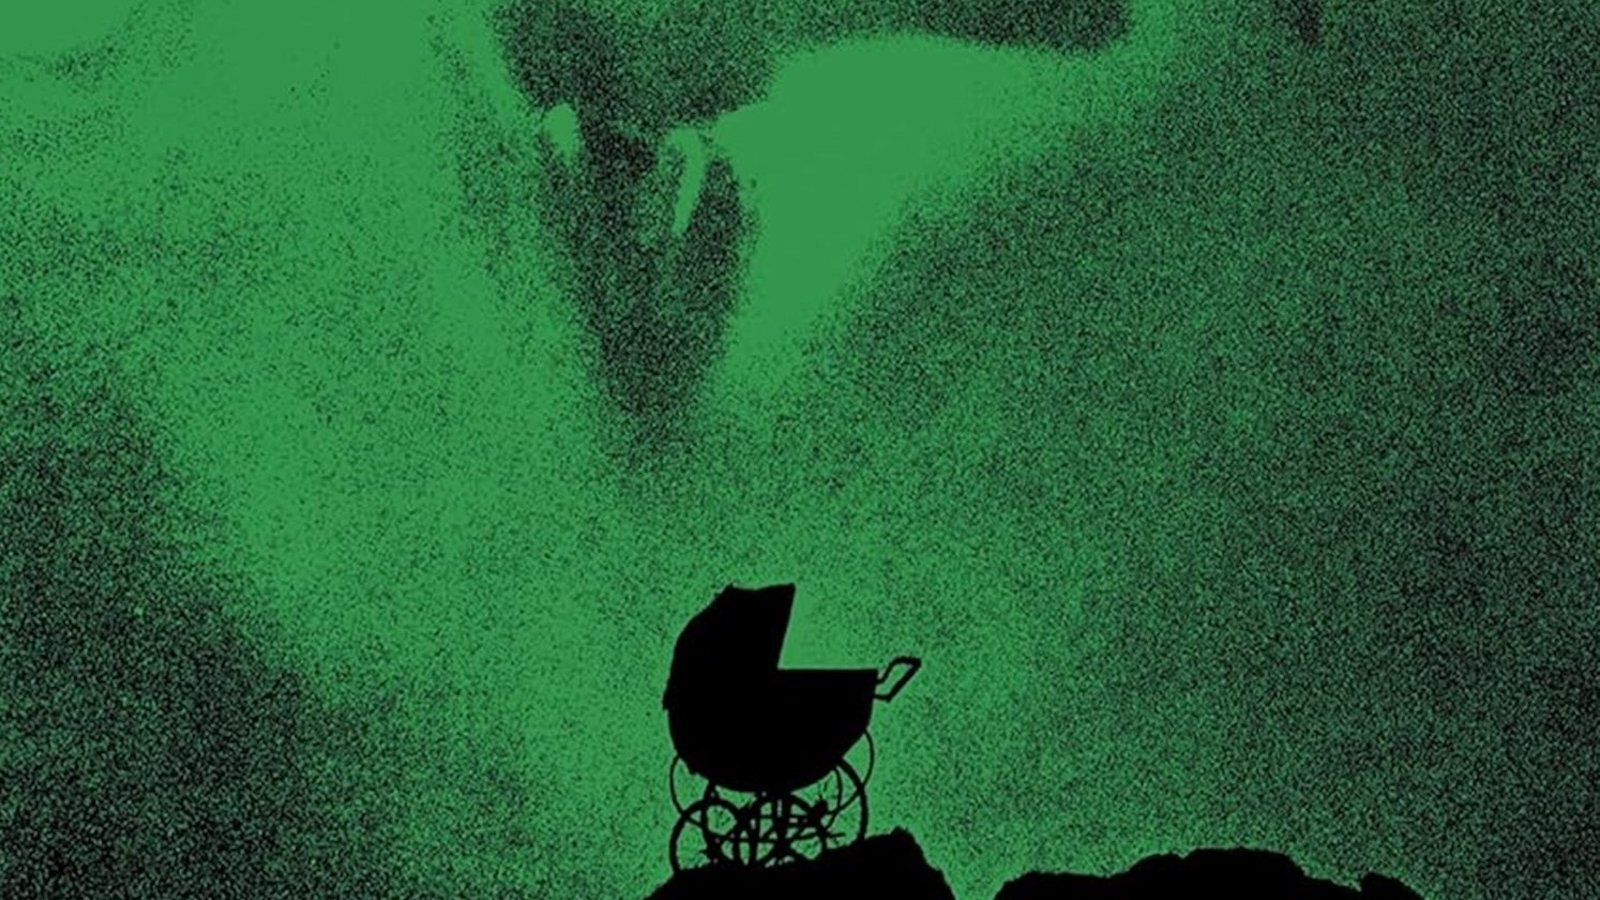 Rosemary's Baby in 4K UHD, la recensione: così il film di Polanski è ancora più inquietante